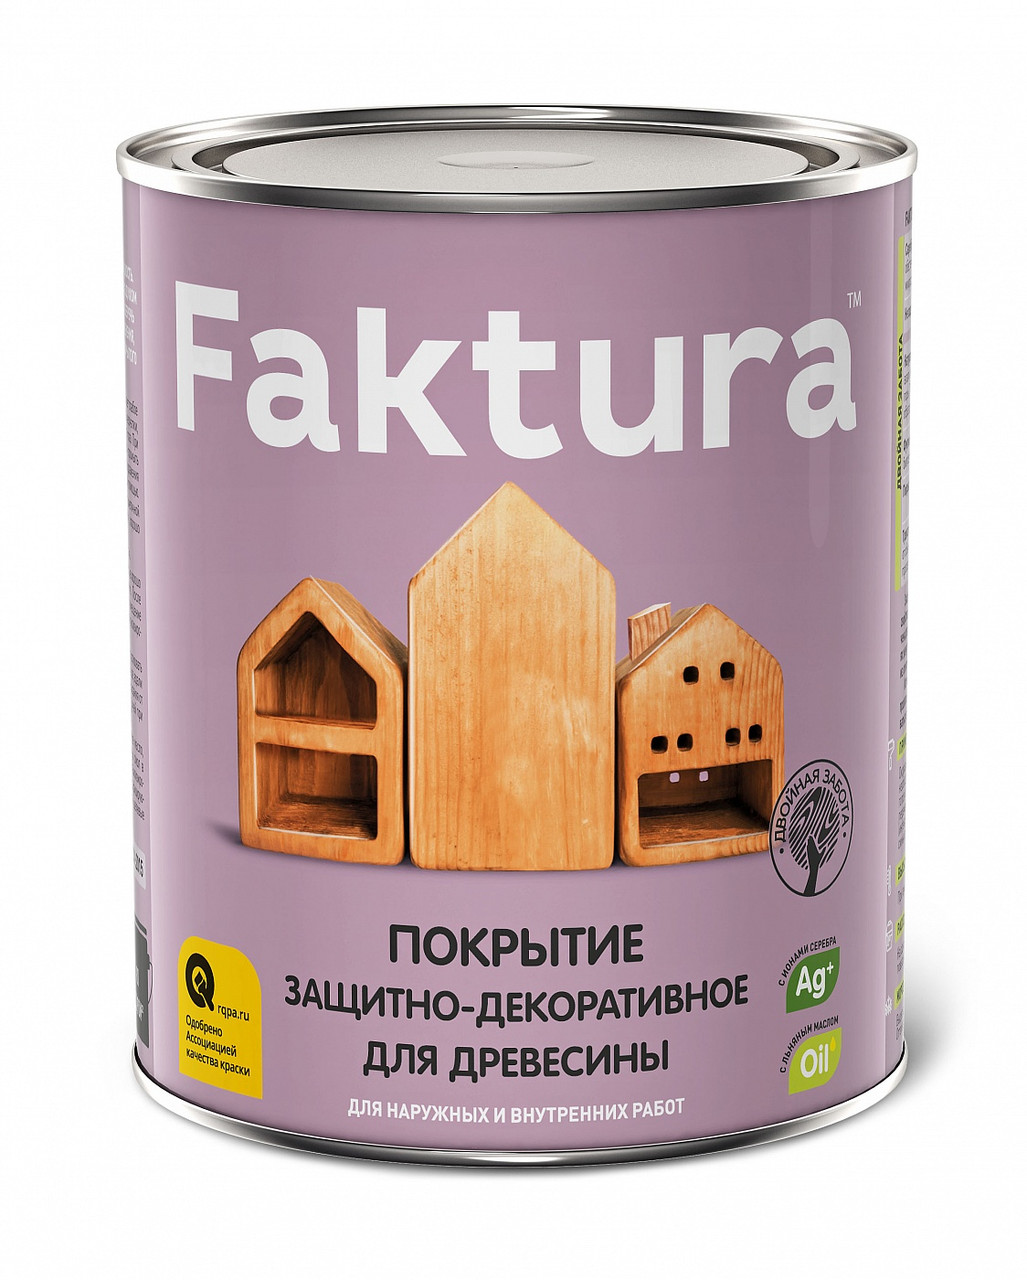 Покрытие FAKTURA защитно-декоративное для древесины бесцветное 2,5л